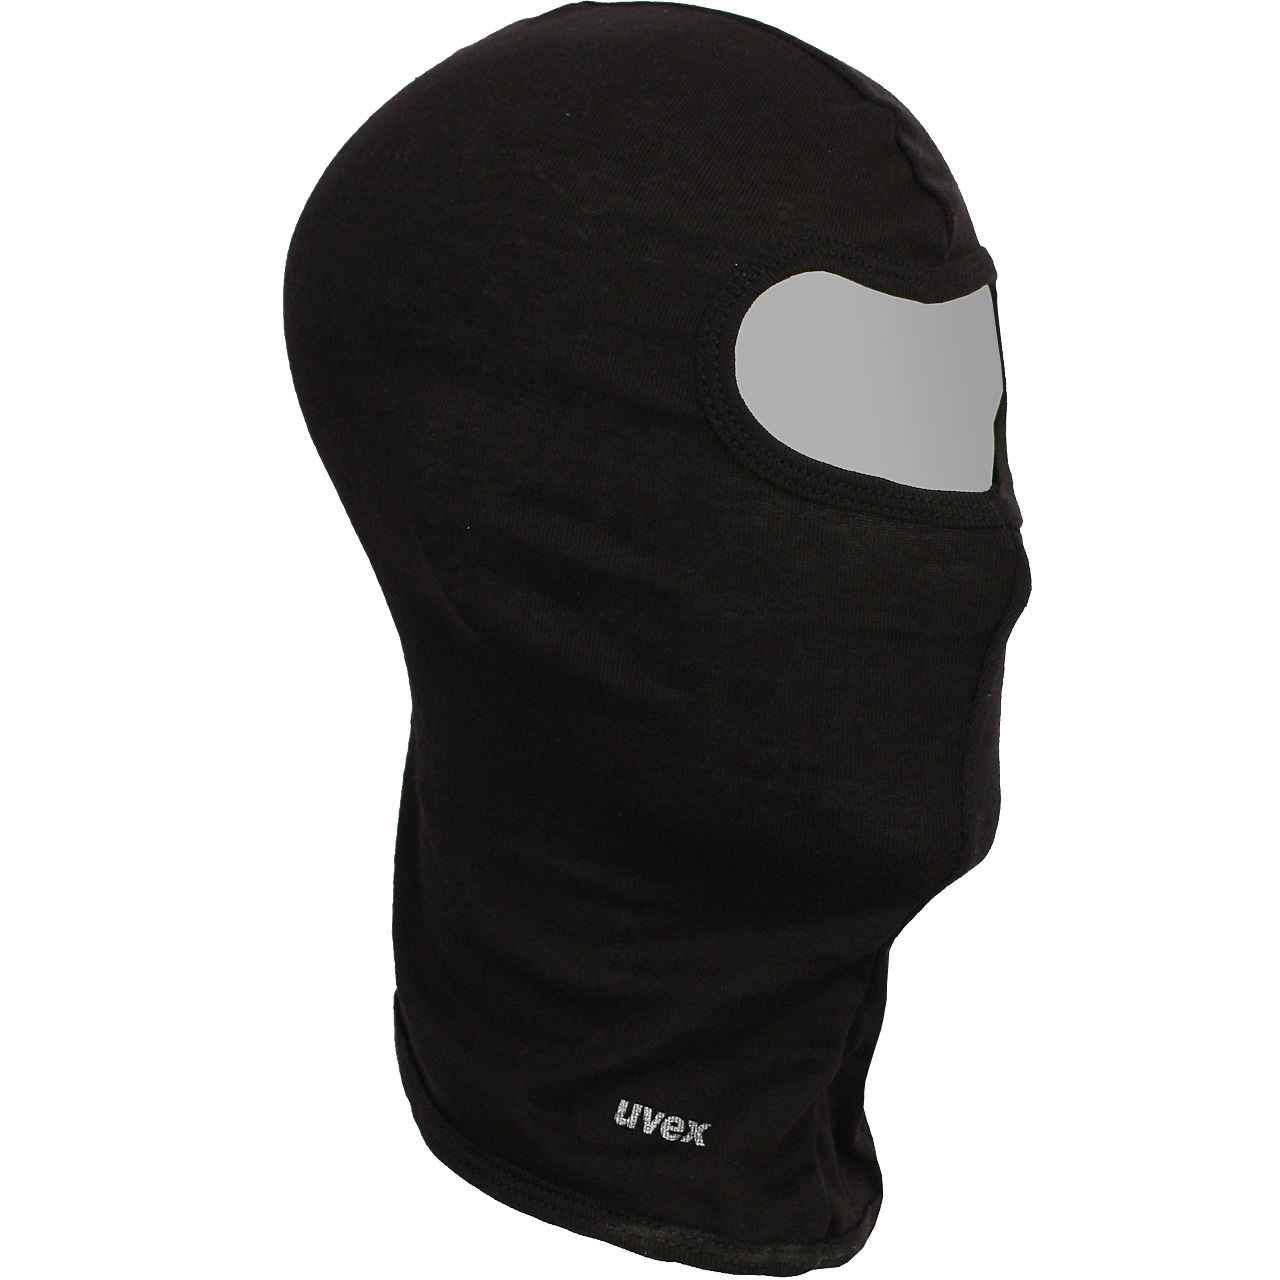 UVEX STORMCAP Kopfhaube Sturmhaube Helmunterzieher Gesichtsmaske